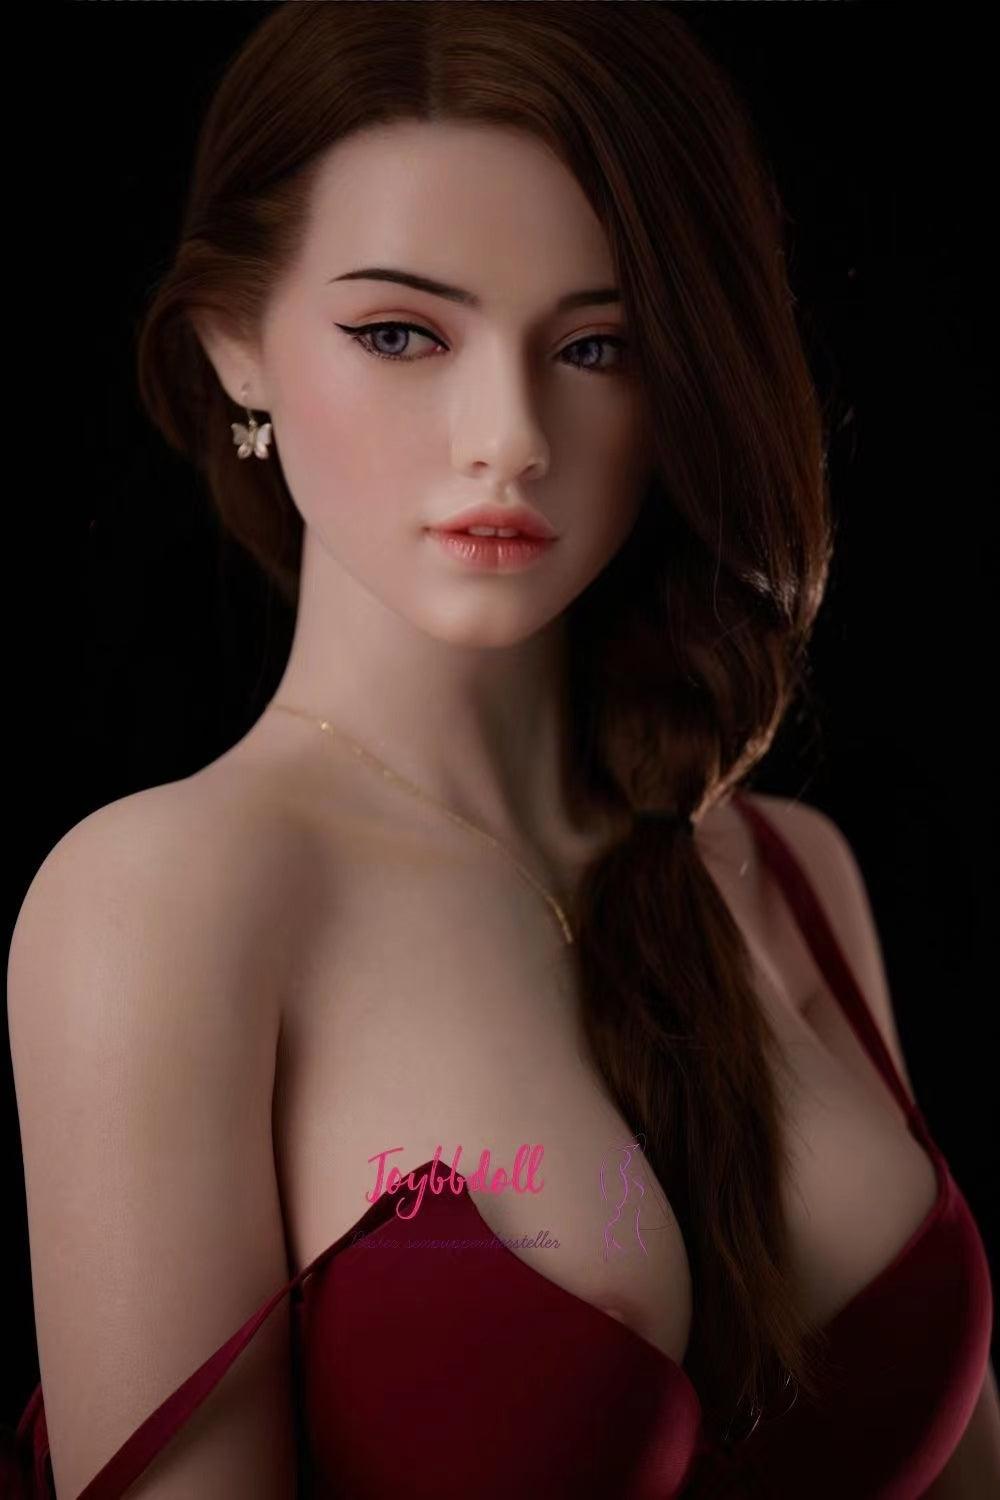 Monika-Europäische Studentin(18 Jahre) - Joybbdoll-CST Doll